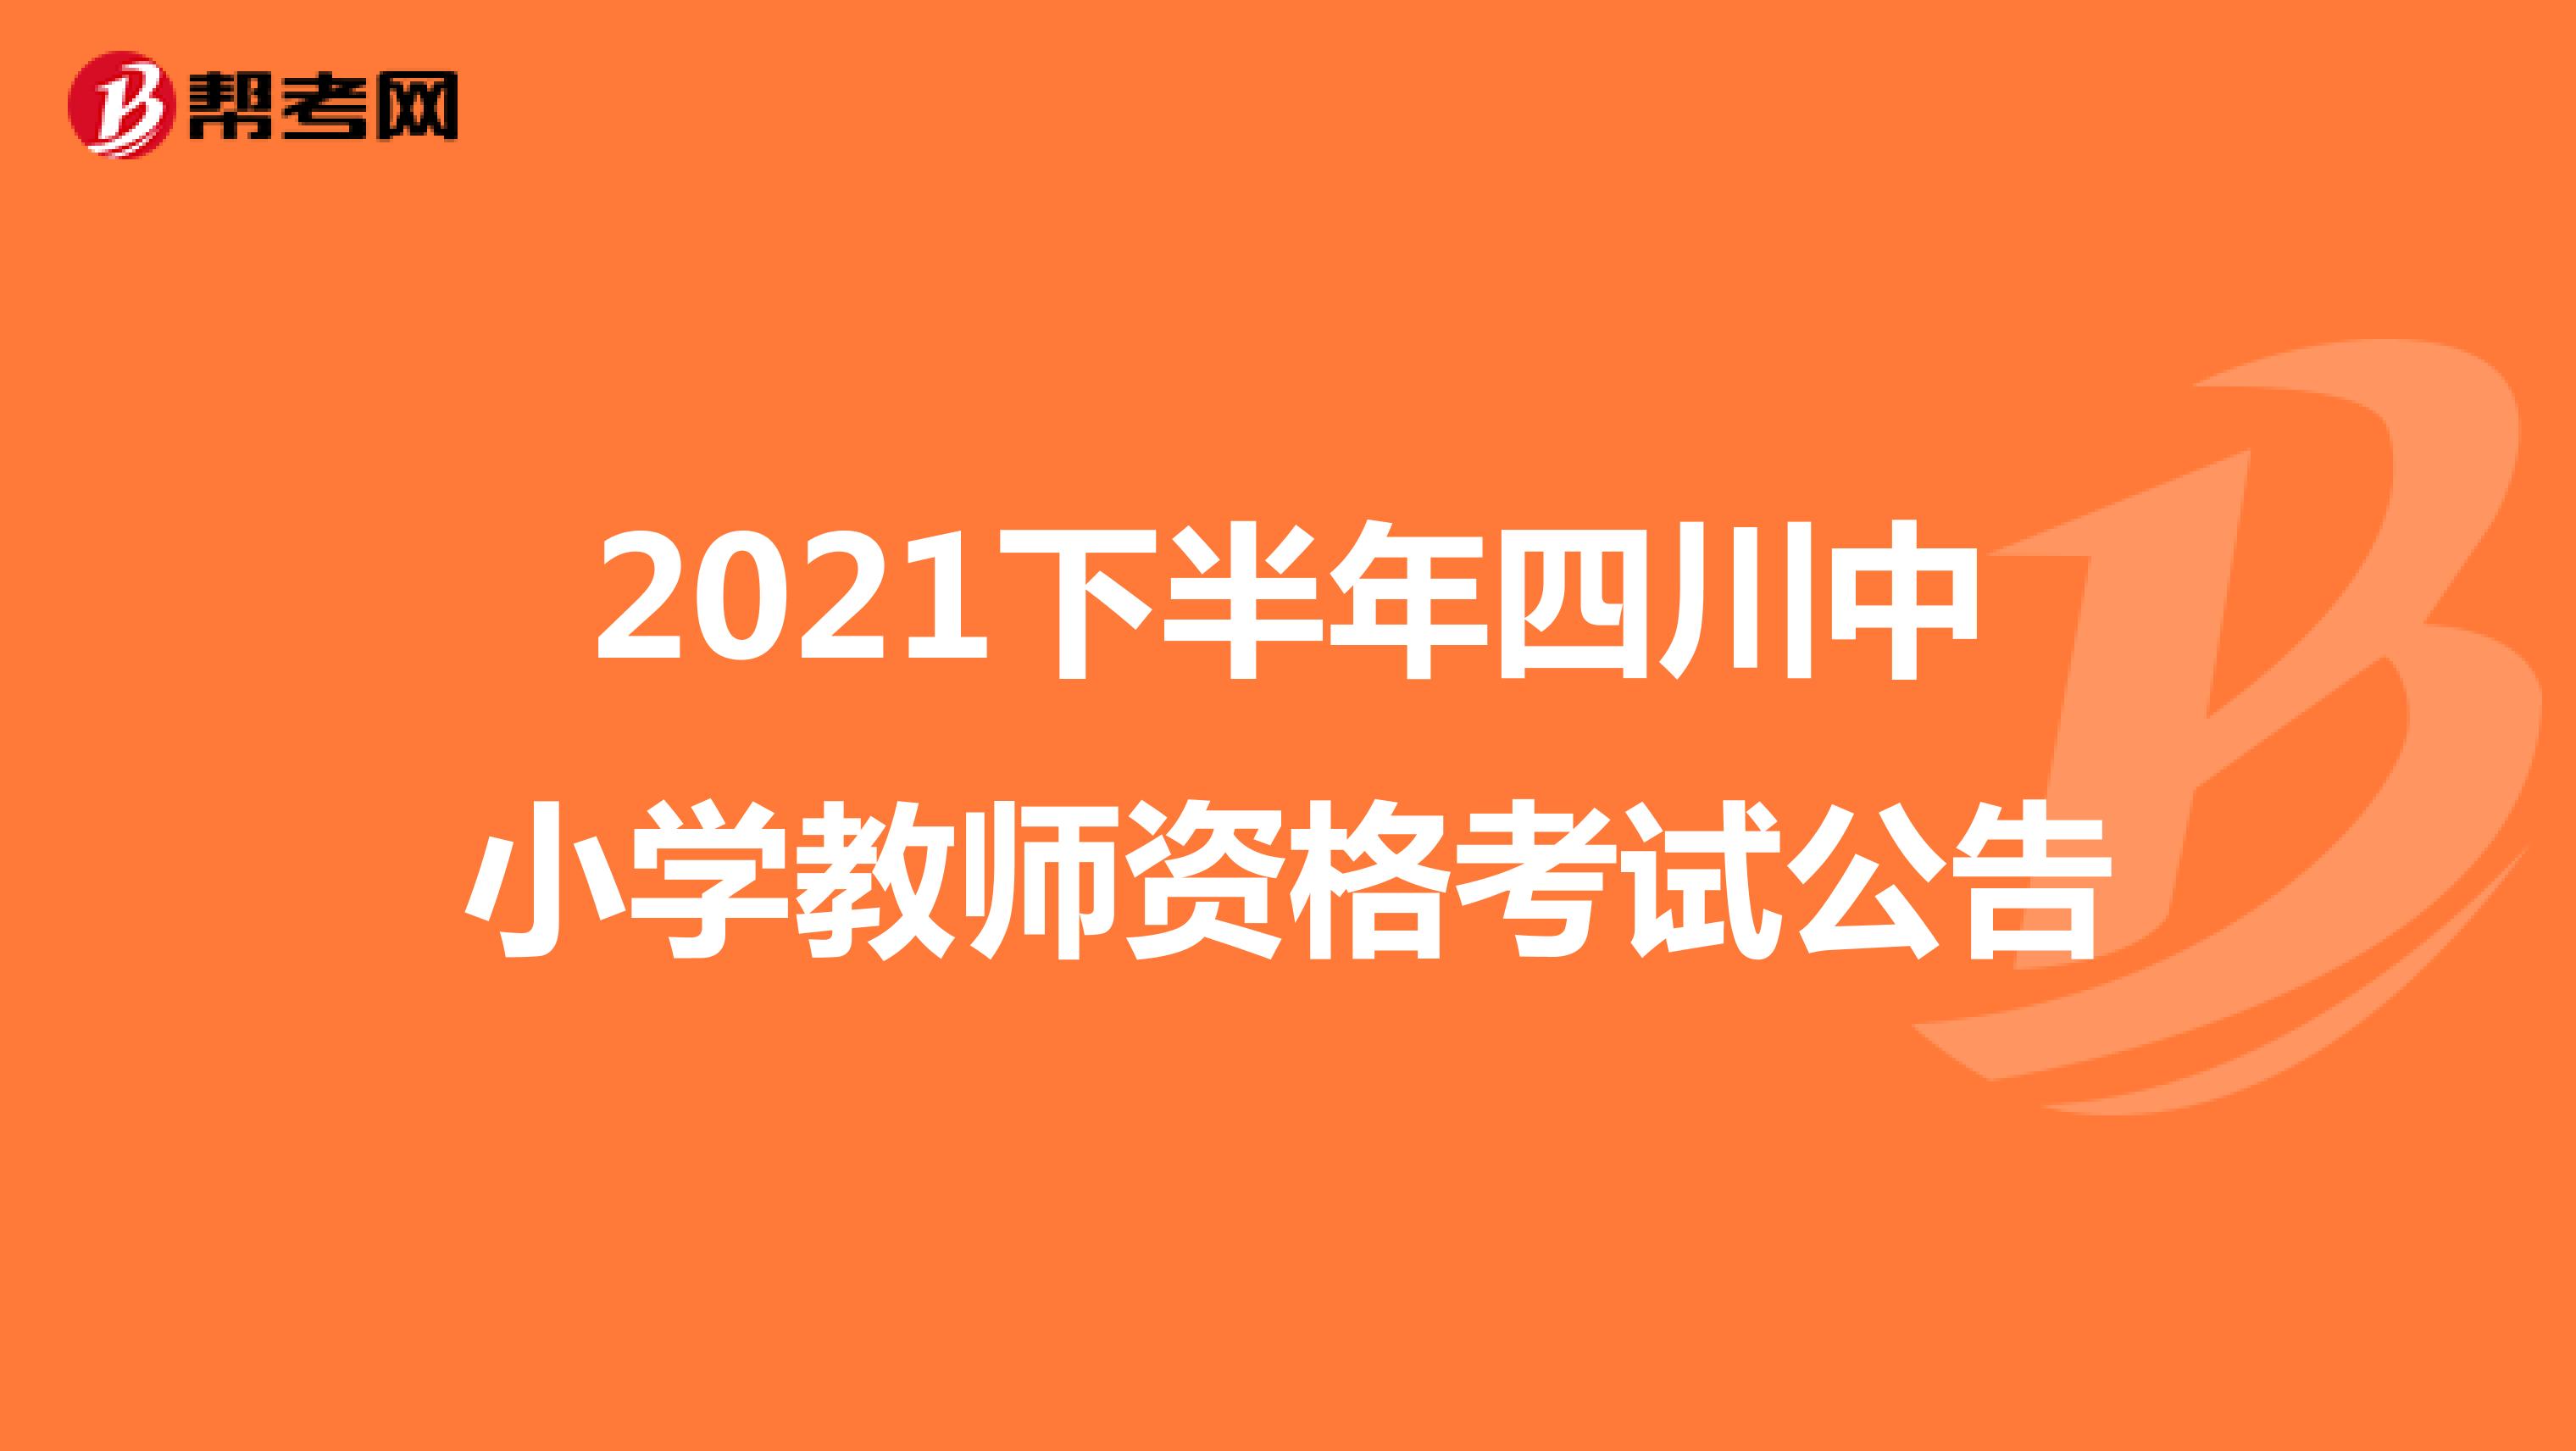 2021下半年四川中小学教师资格考试公告